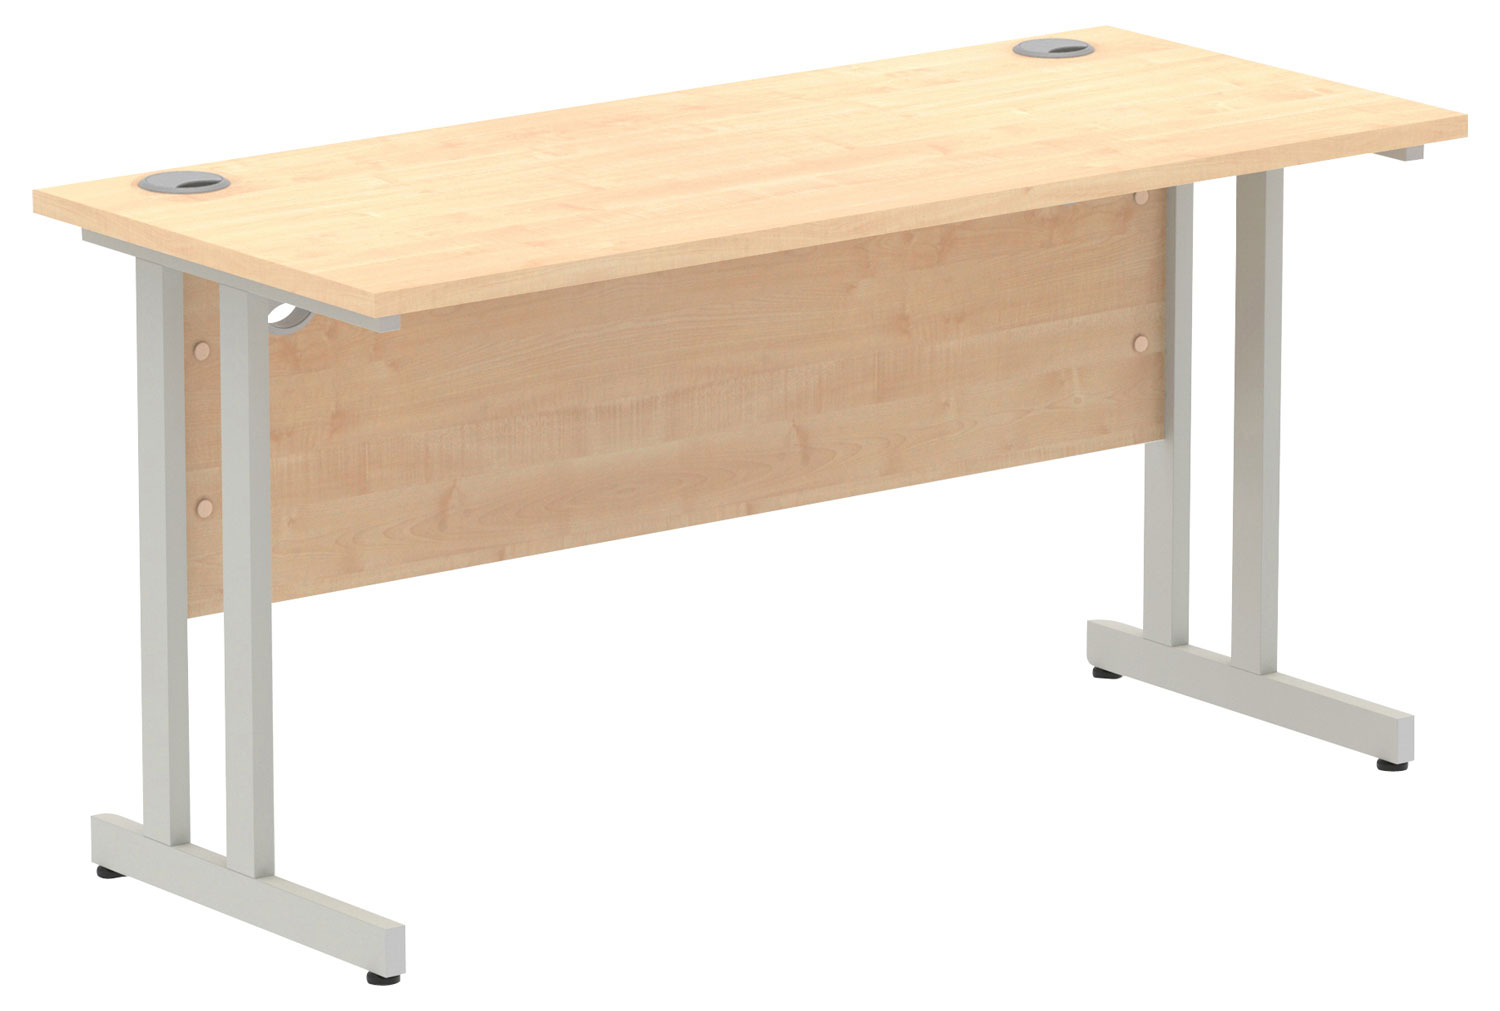 All Maple Narrow C-Leg Rectangular Office Desk, 140wx60dx73h (cm), Silver Frame